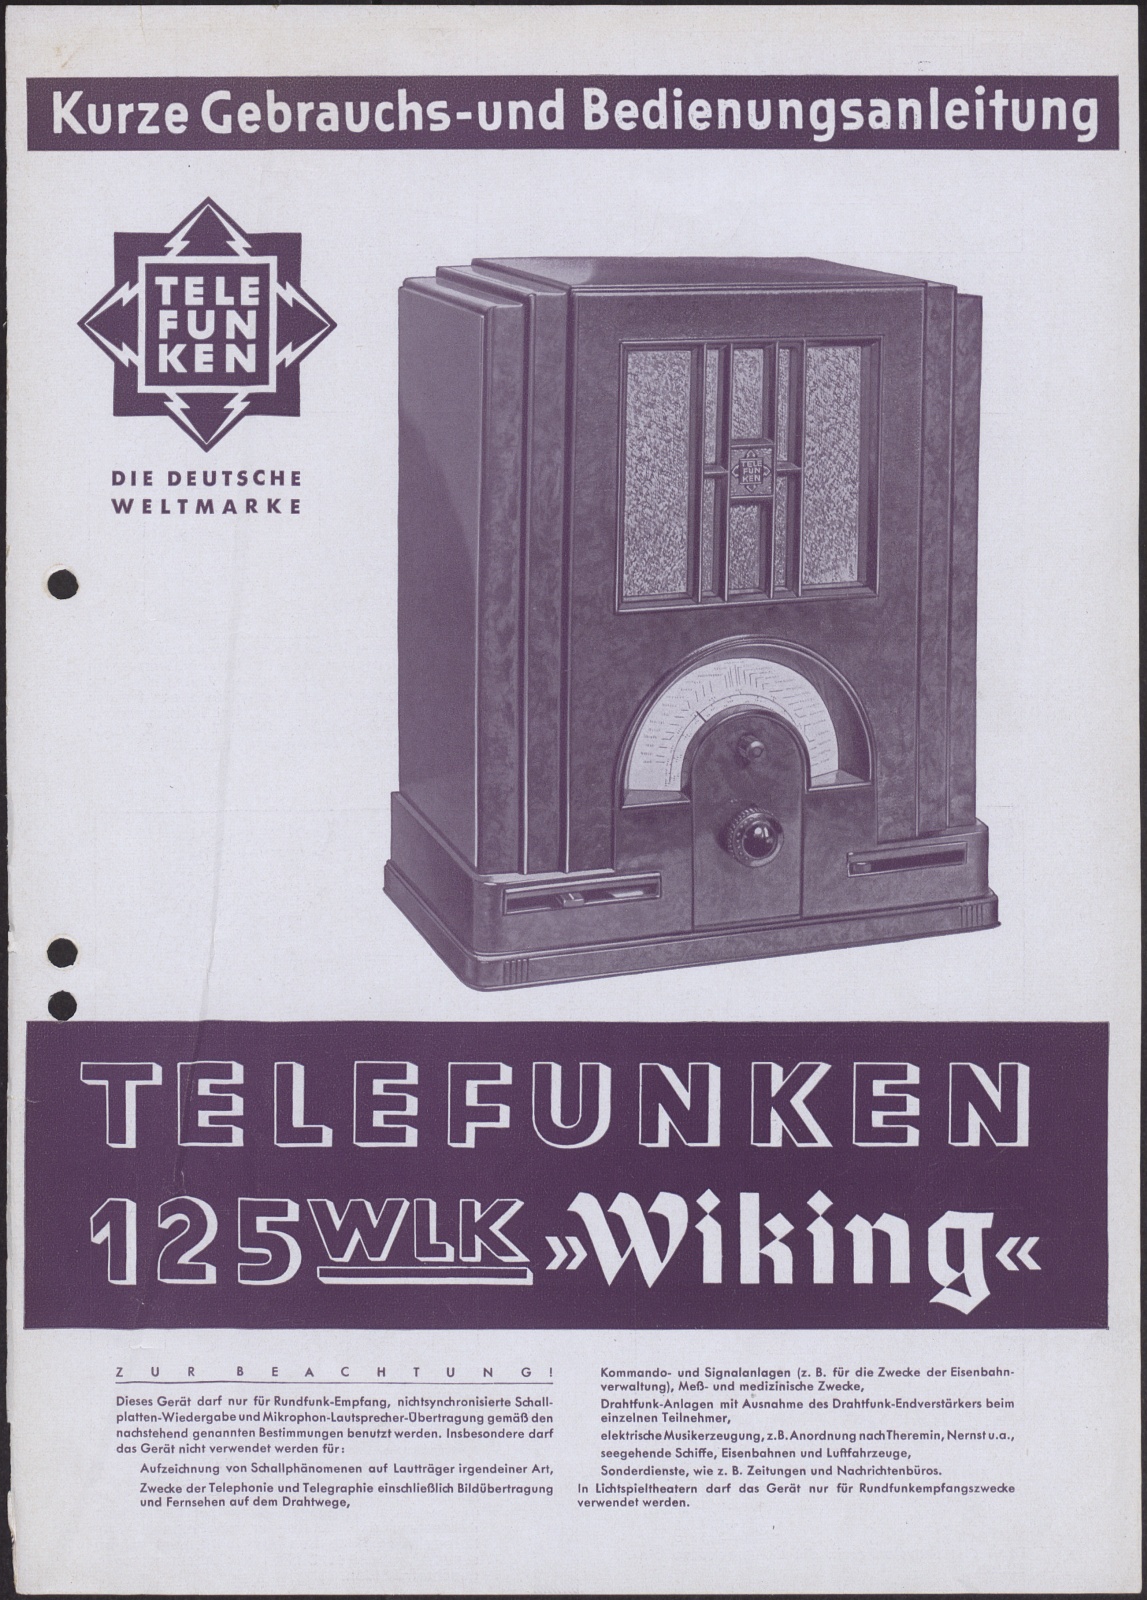 Bedienungsanleitung: Kurze Gebrauchs- und Bedienungsanleitung für Telefunken 125 WLK "Wiking" (Stiftung Deutsches Technikmuseum Berlin CC0)